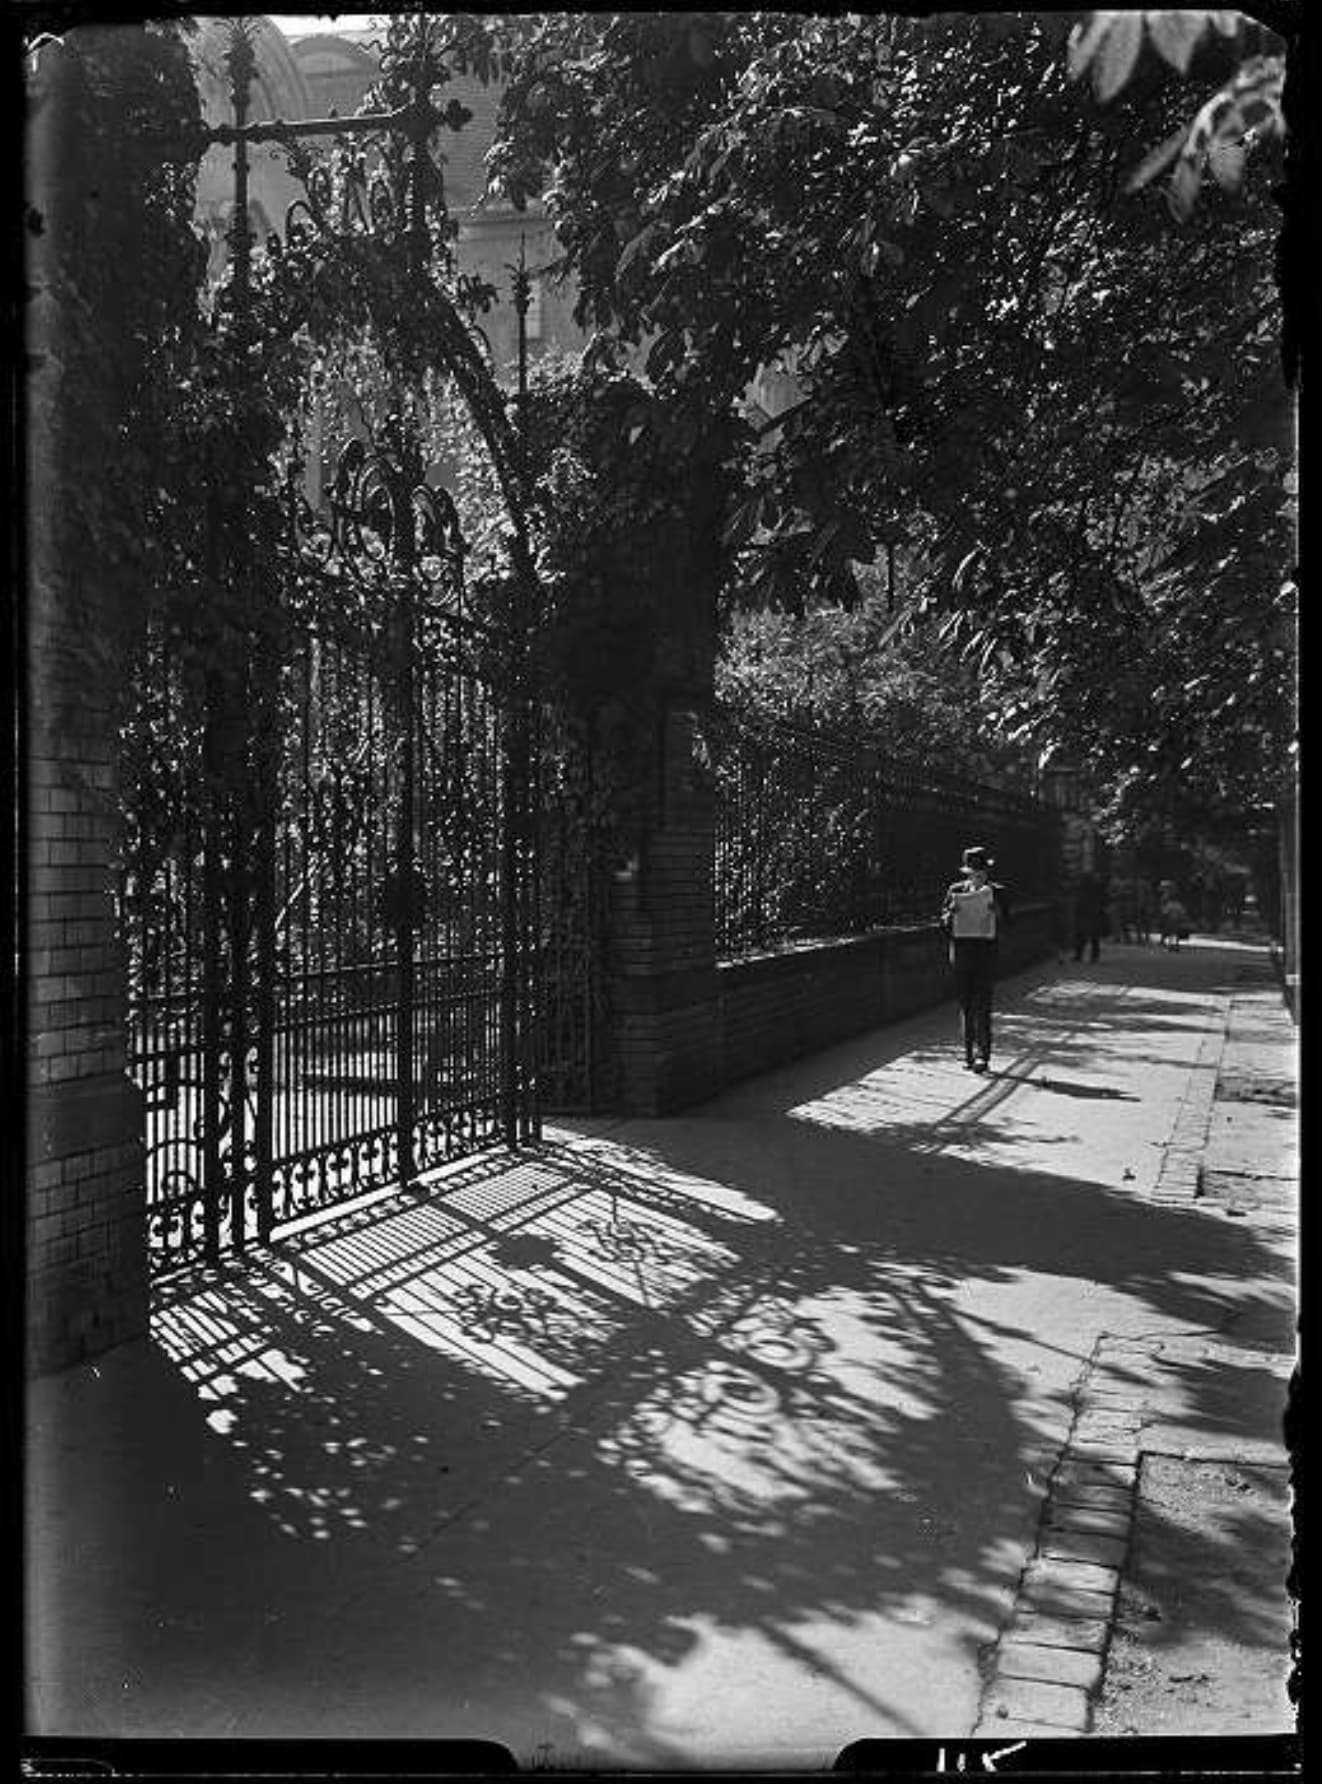 1b. Imre Kinszki, <i>Járókelők egy villa díszrácsos kapuja előtt</i> (“Pedestrians in front of the ornamental gate of a villa”), 1933 © FSZEK